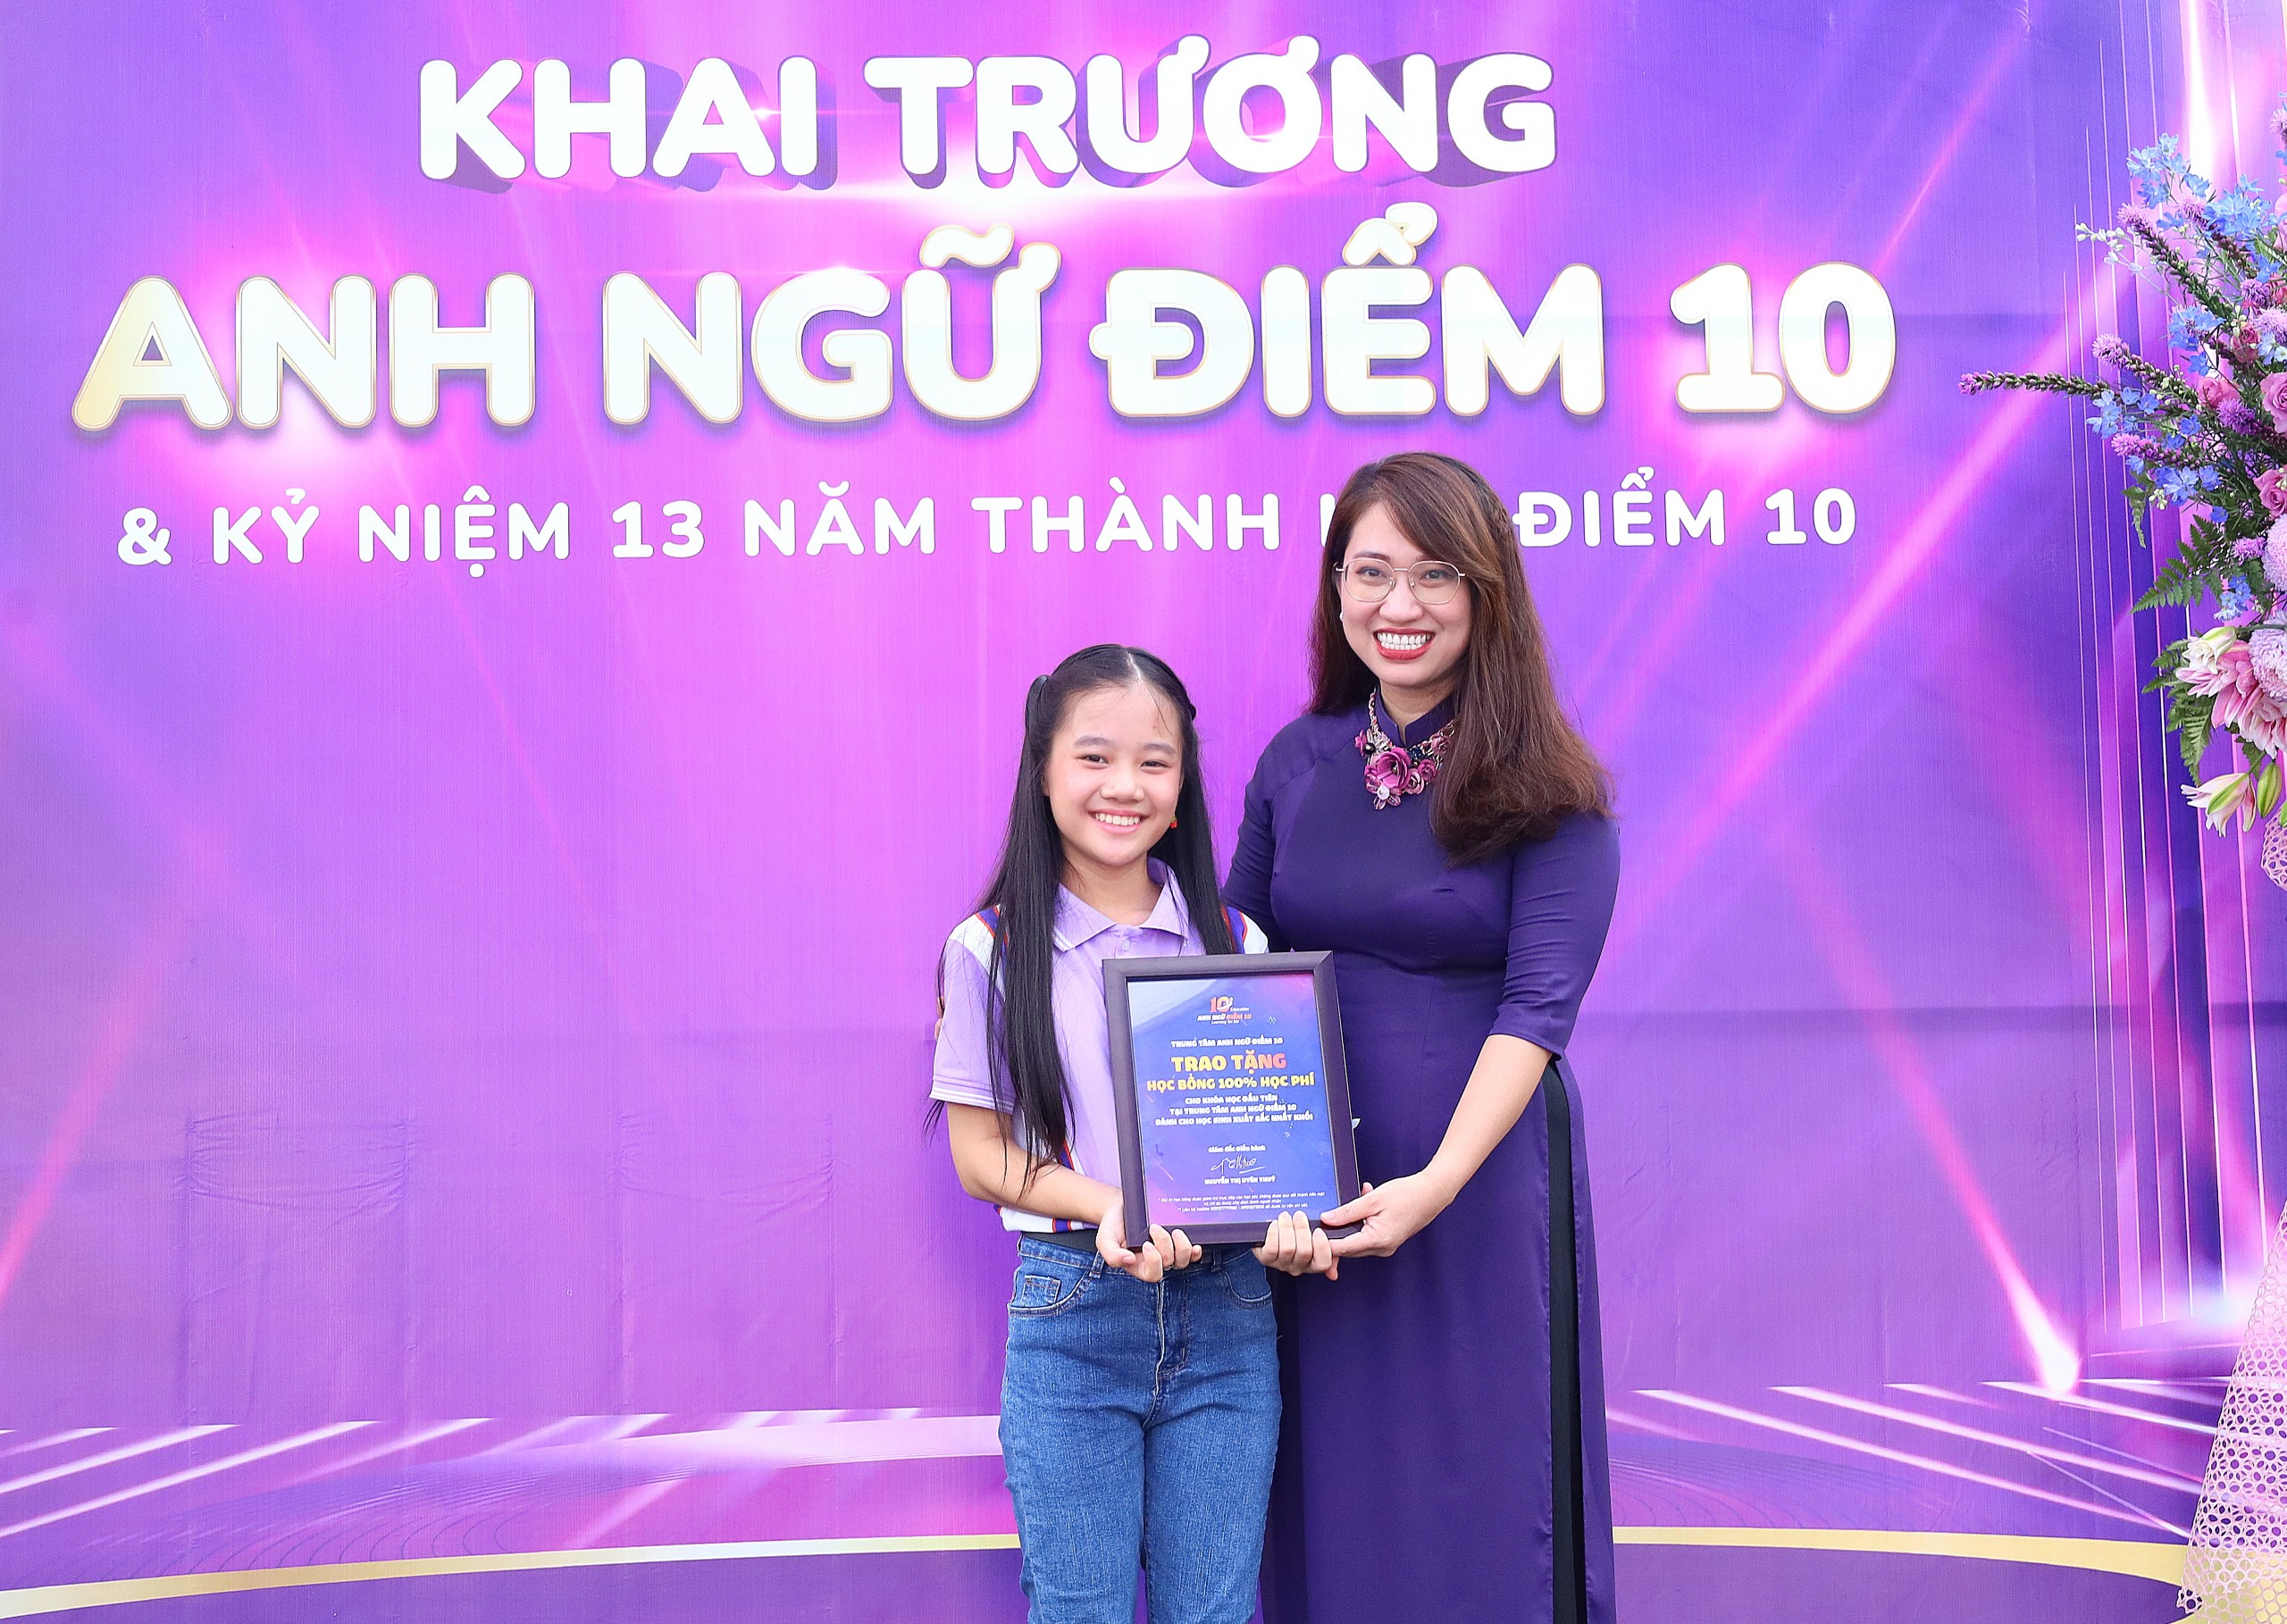 Cô Nguyễn Thị Uyên Thúy – Giám đốc điều hành Trung tâm Anh Ngữ Điểm 10 trao tặng học bổng cho học sinh.